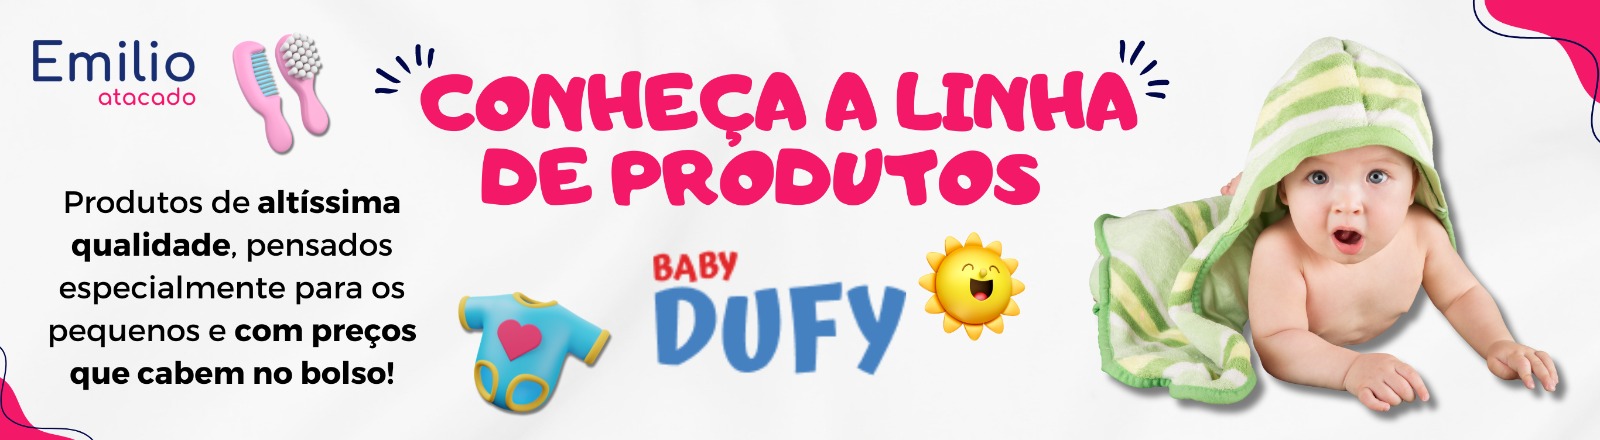 Conheça a Linha Baby Dufy